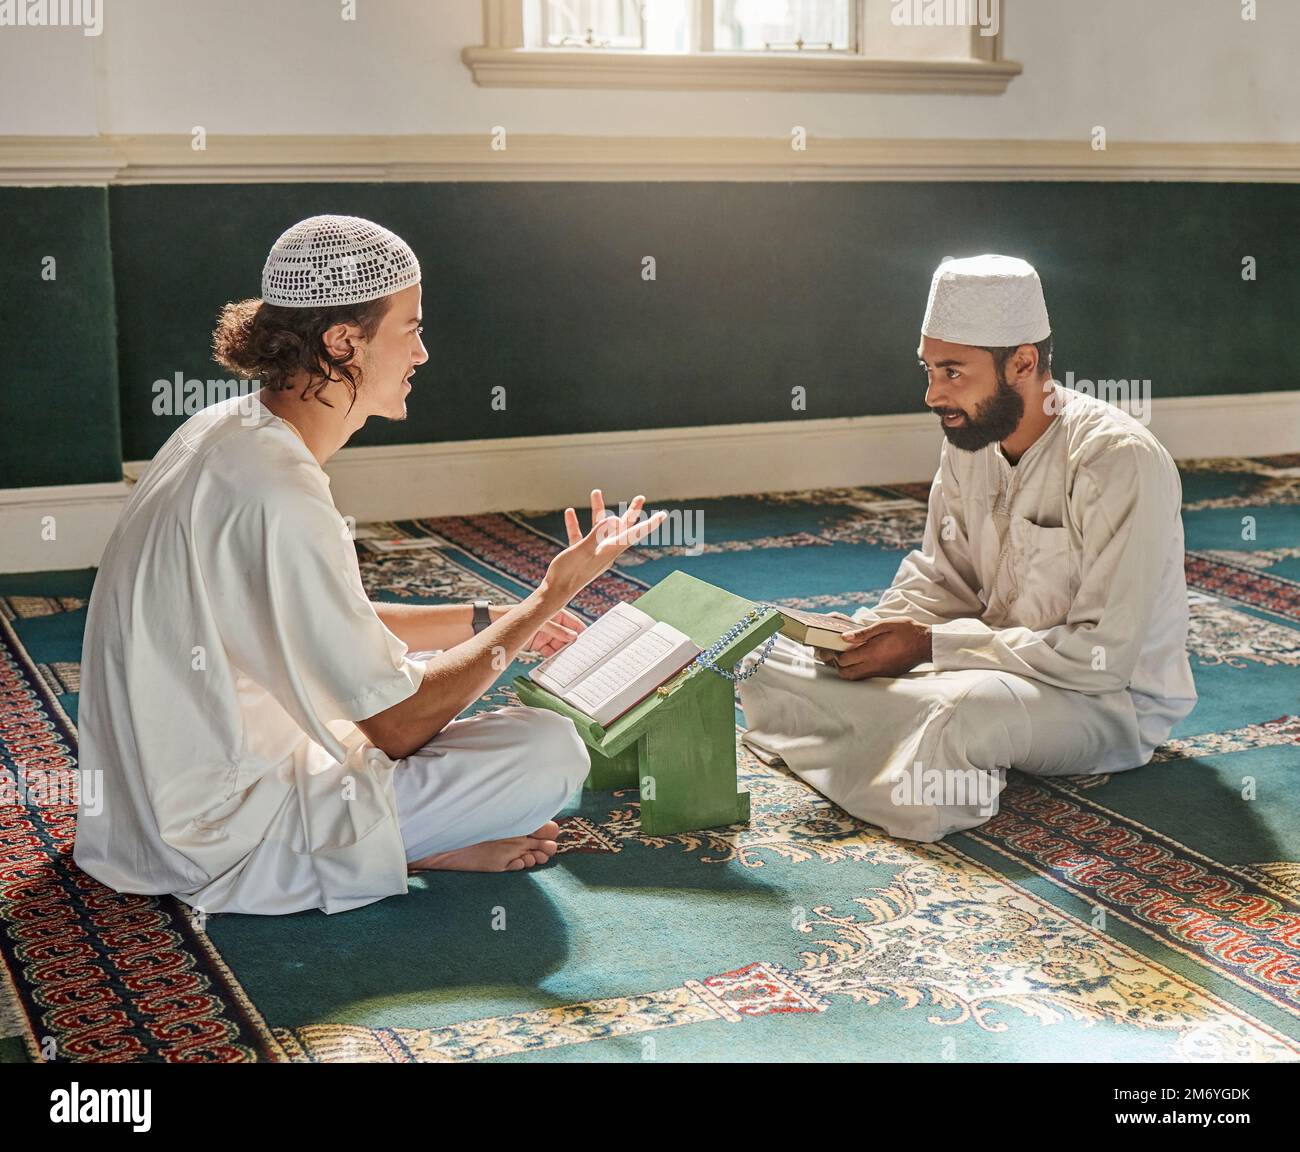 Les musulmans prient, adorent ou étudient le Coran pour la paix, la pleine conscience ou le soutien d'Allah dans la sainte mosquée. Apprendre, islamique ou les personnes parlant Banque D'Images